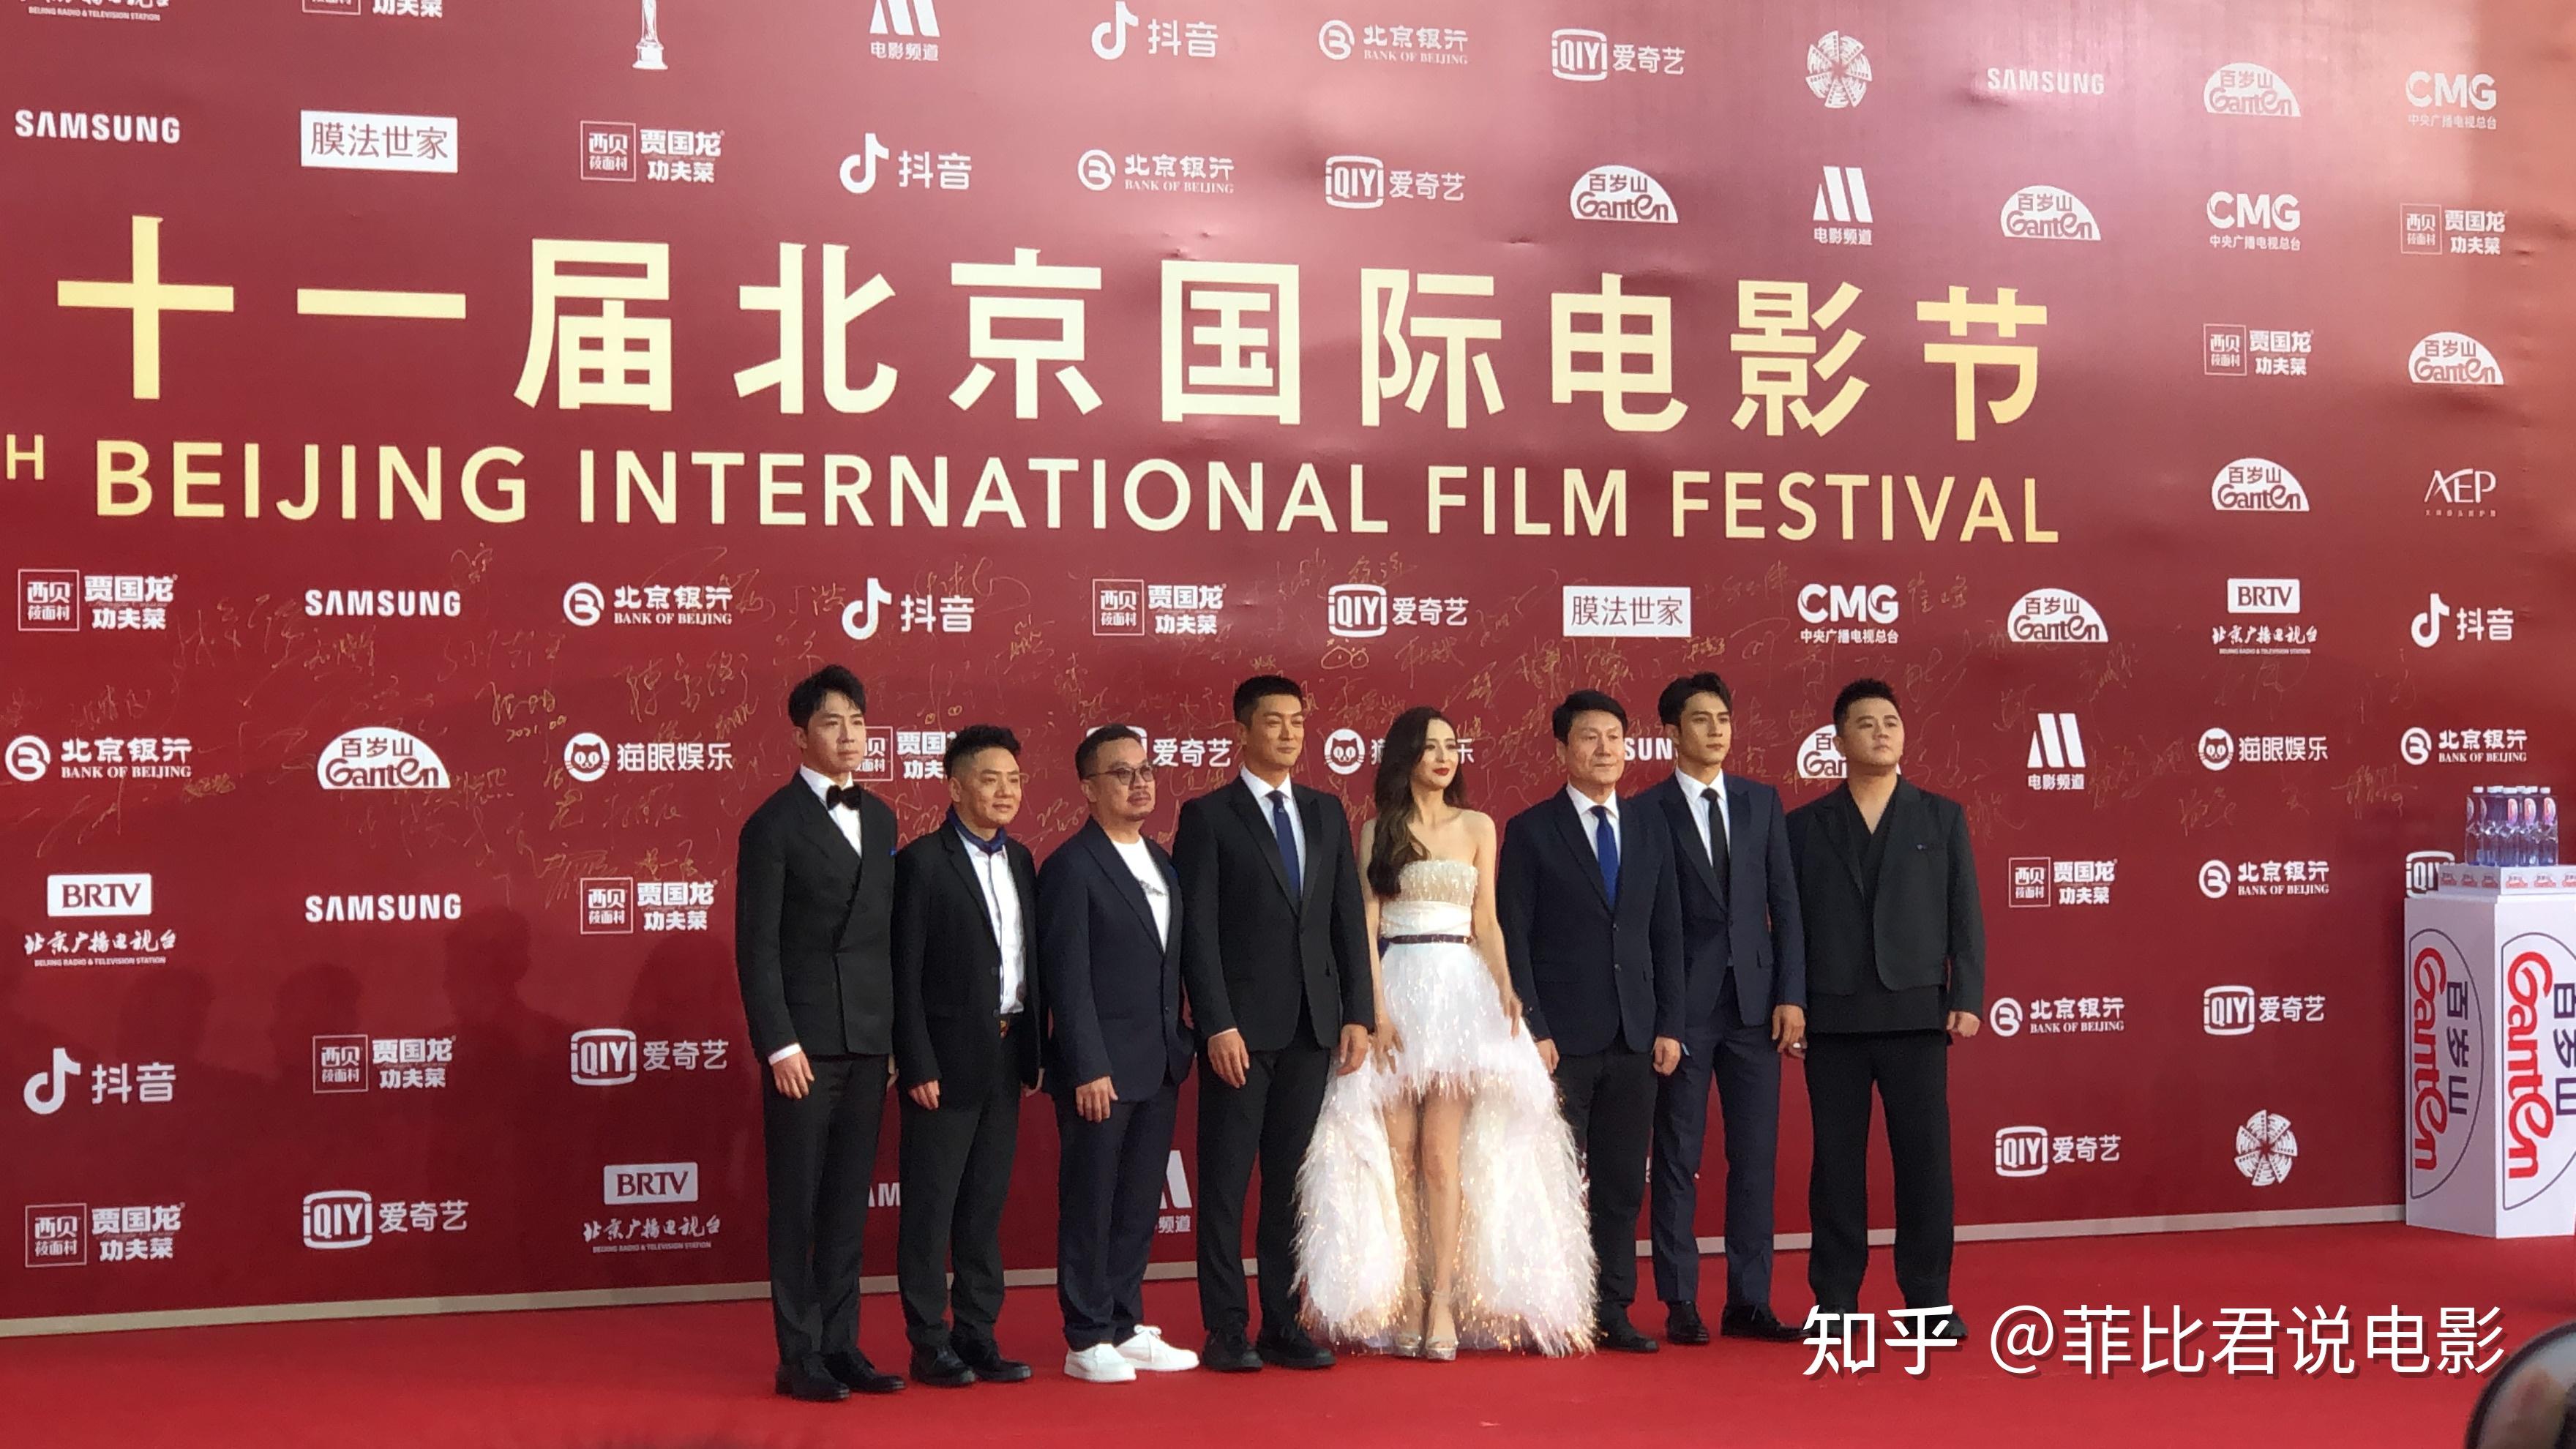 星光璀璨,群星云集,2021北京国际电影节开幕式,你最期待哪部电影?